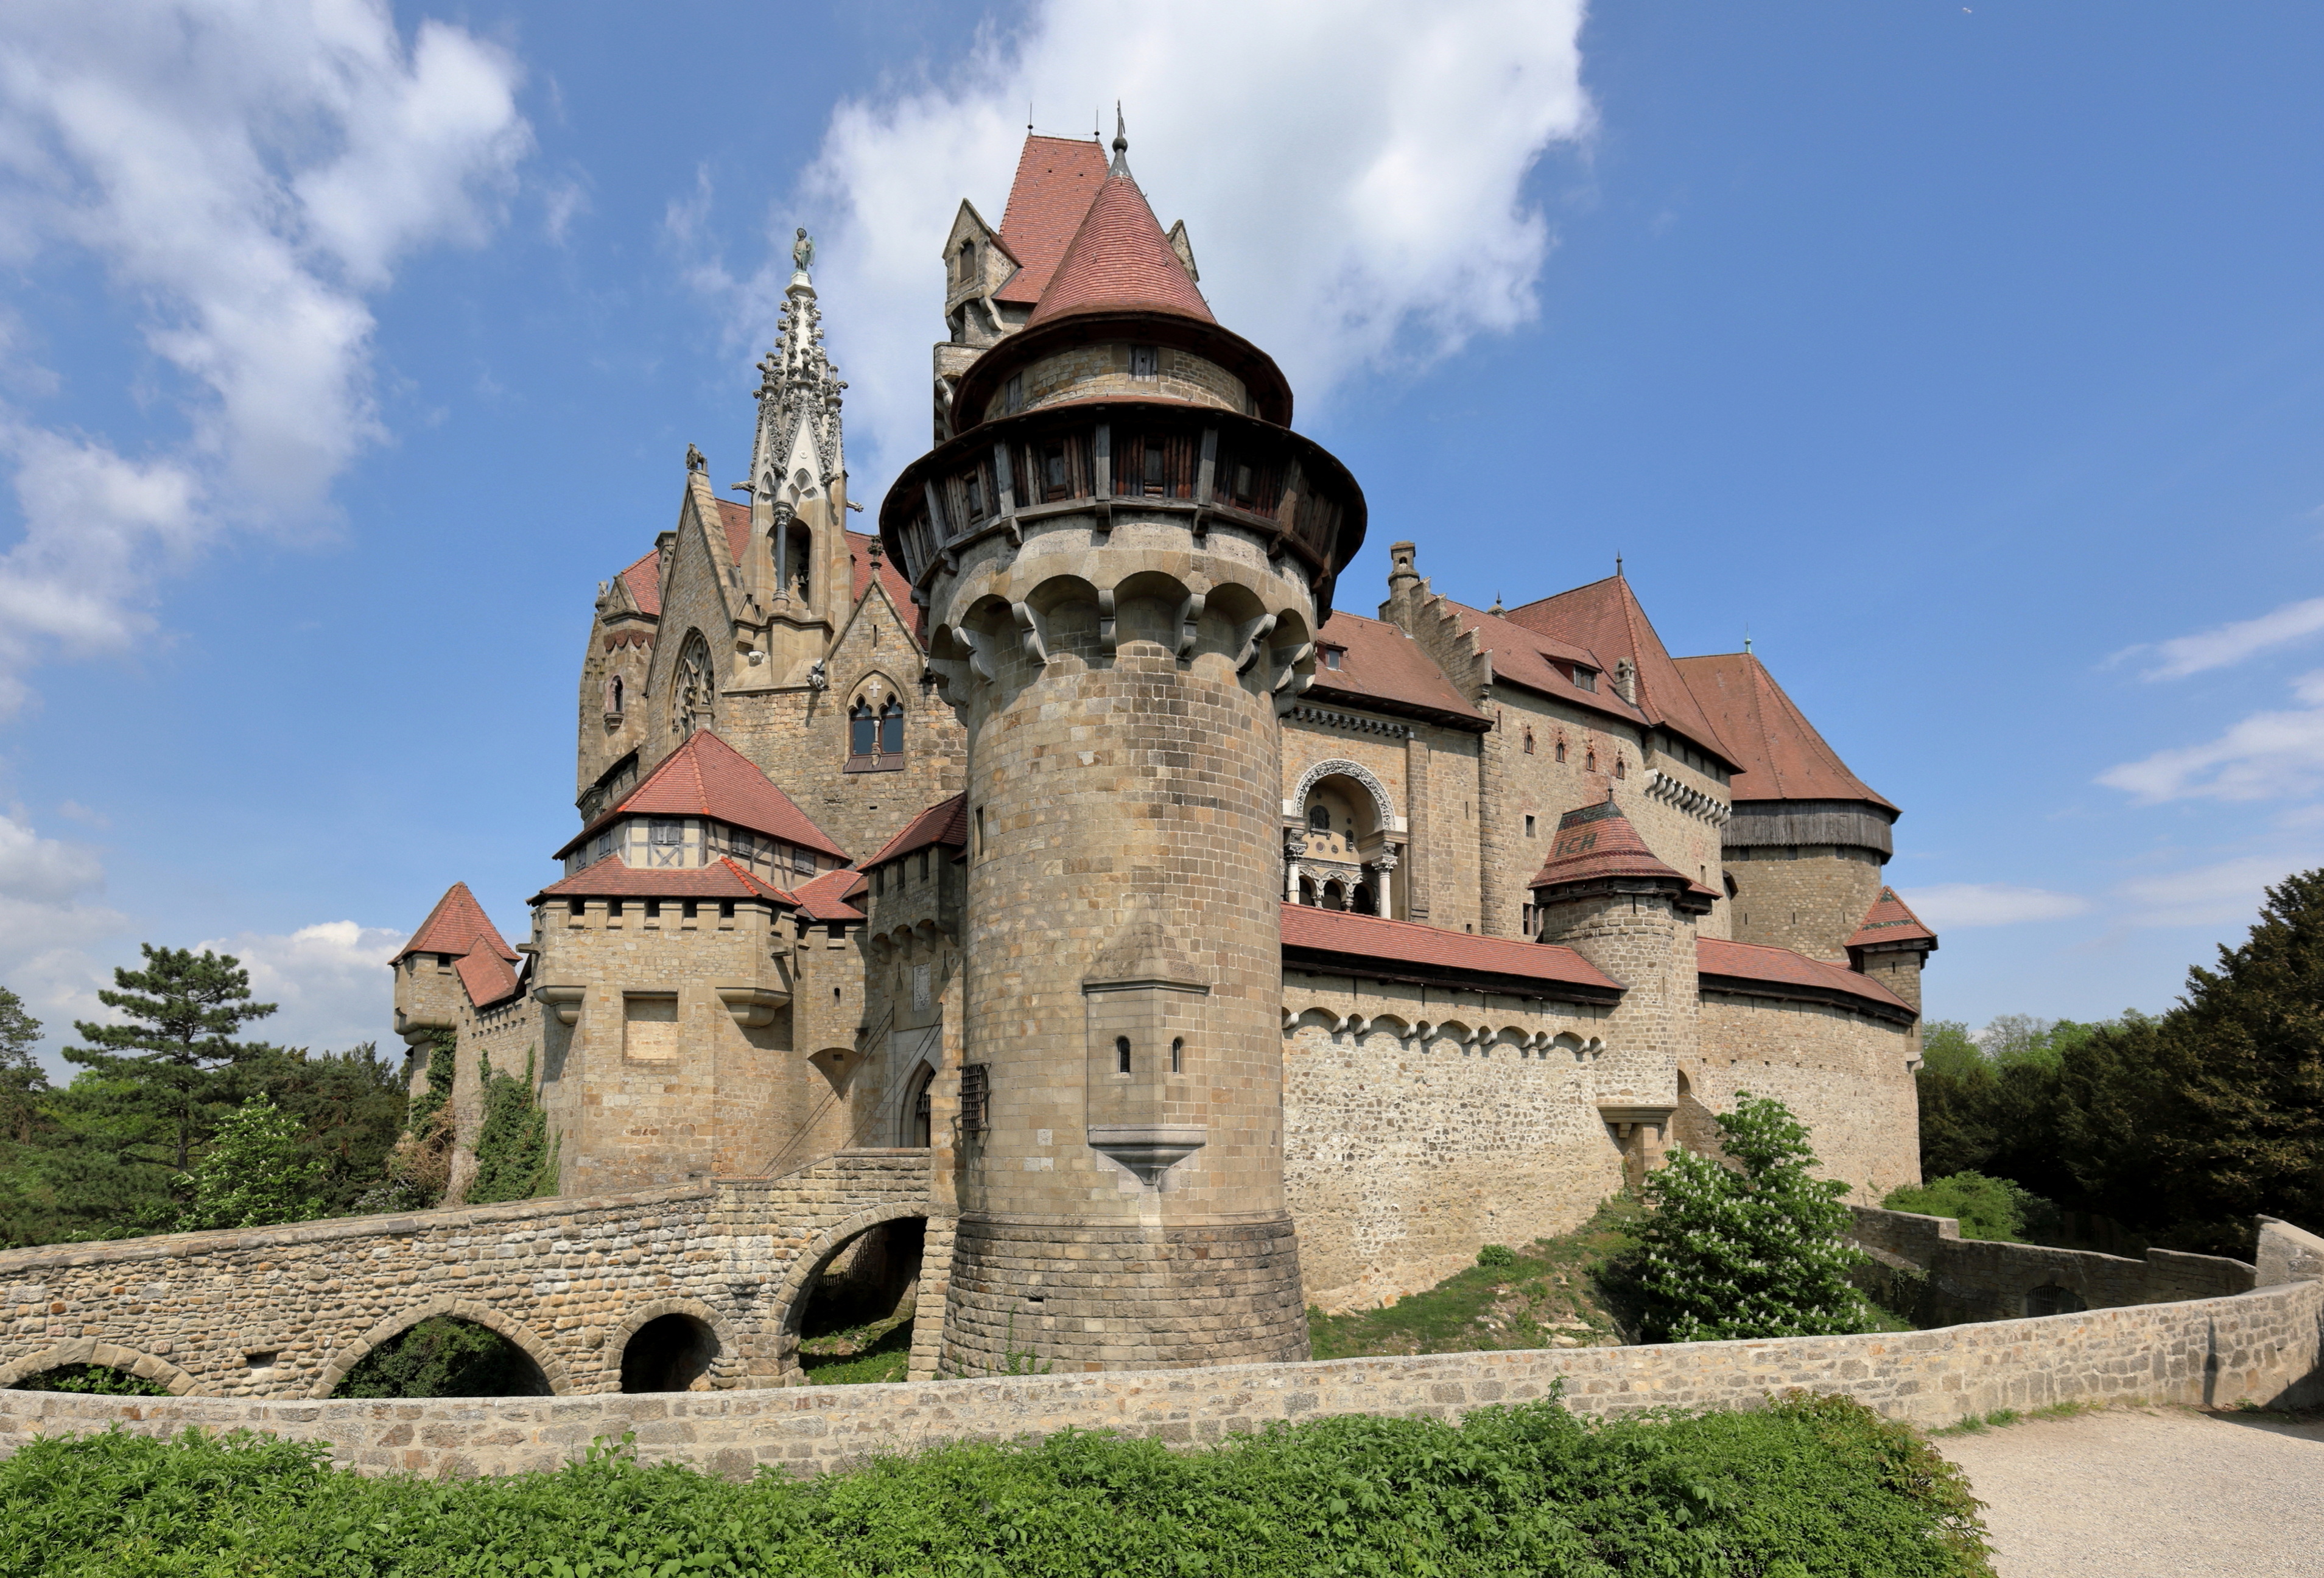 Fotos von Österreich Turm Kreuzenstein Castle, Lower Austria, Korneuburg Burg Städte 3817x2592 Türme